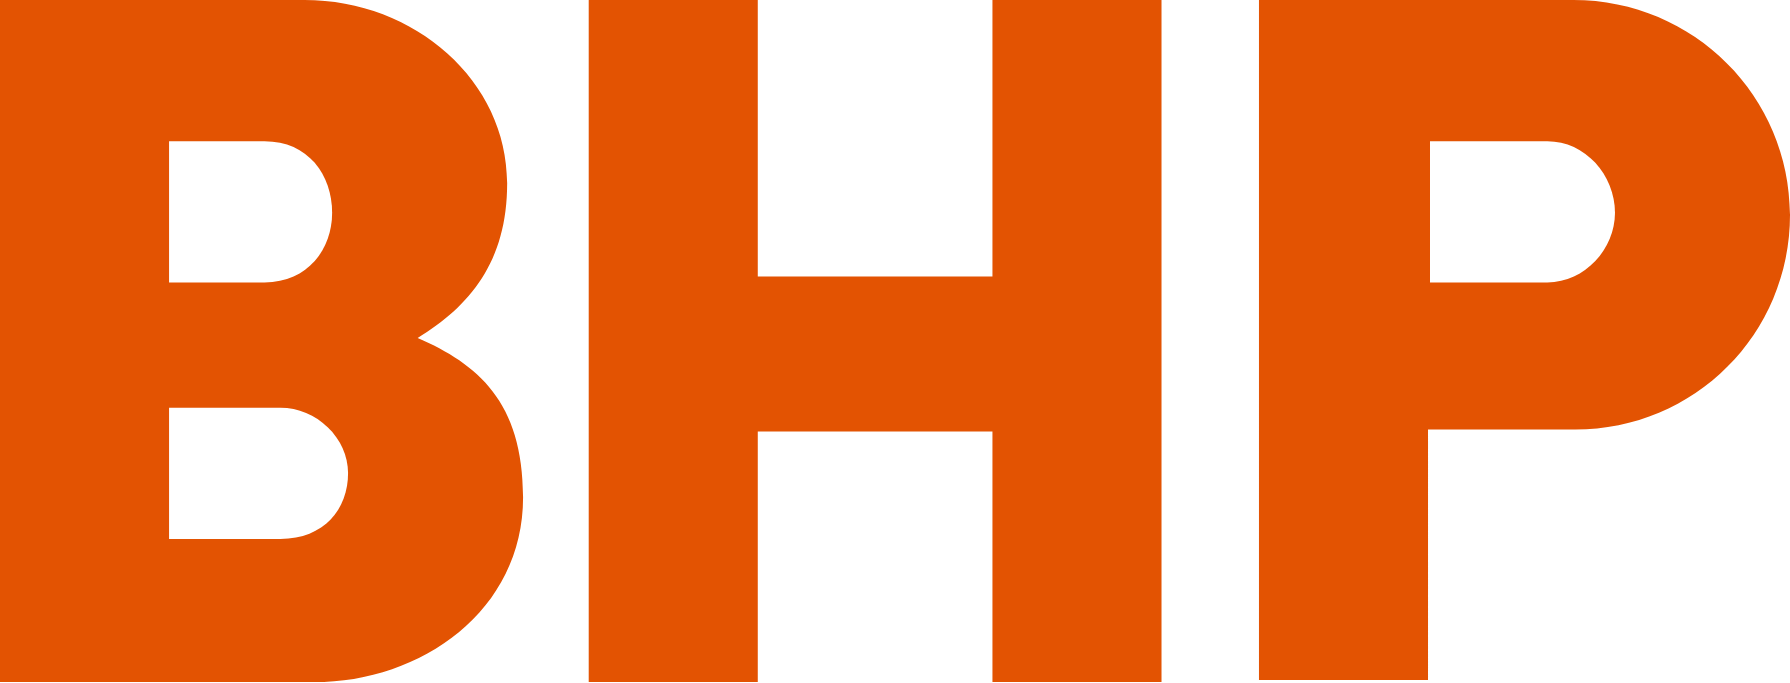 BHP Group logo (PNG transparent)